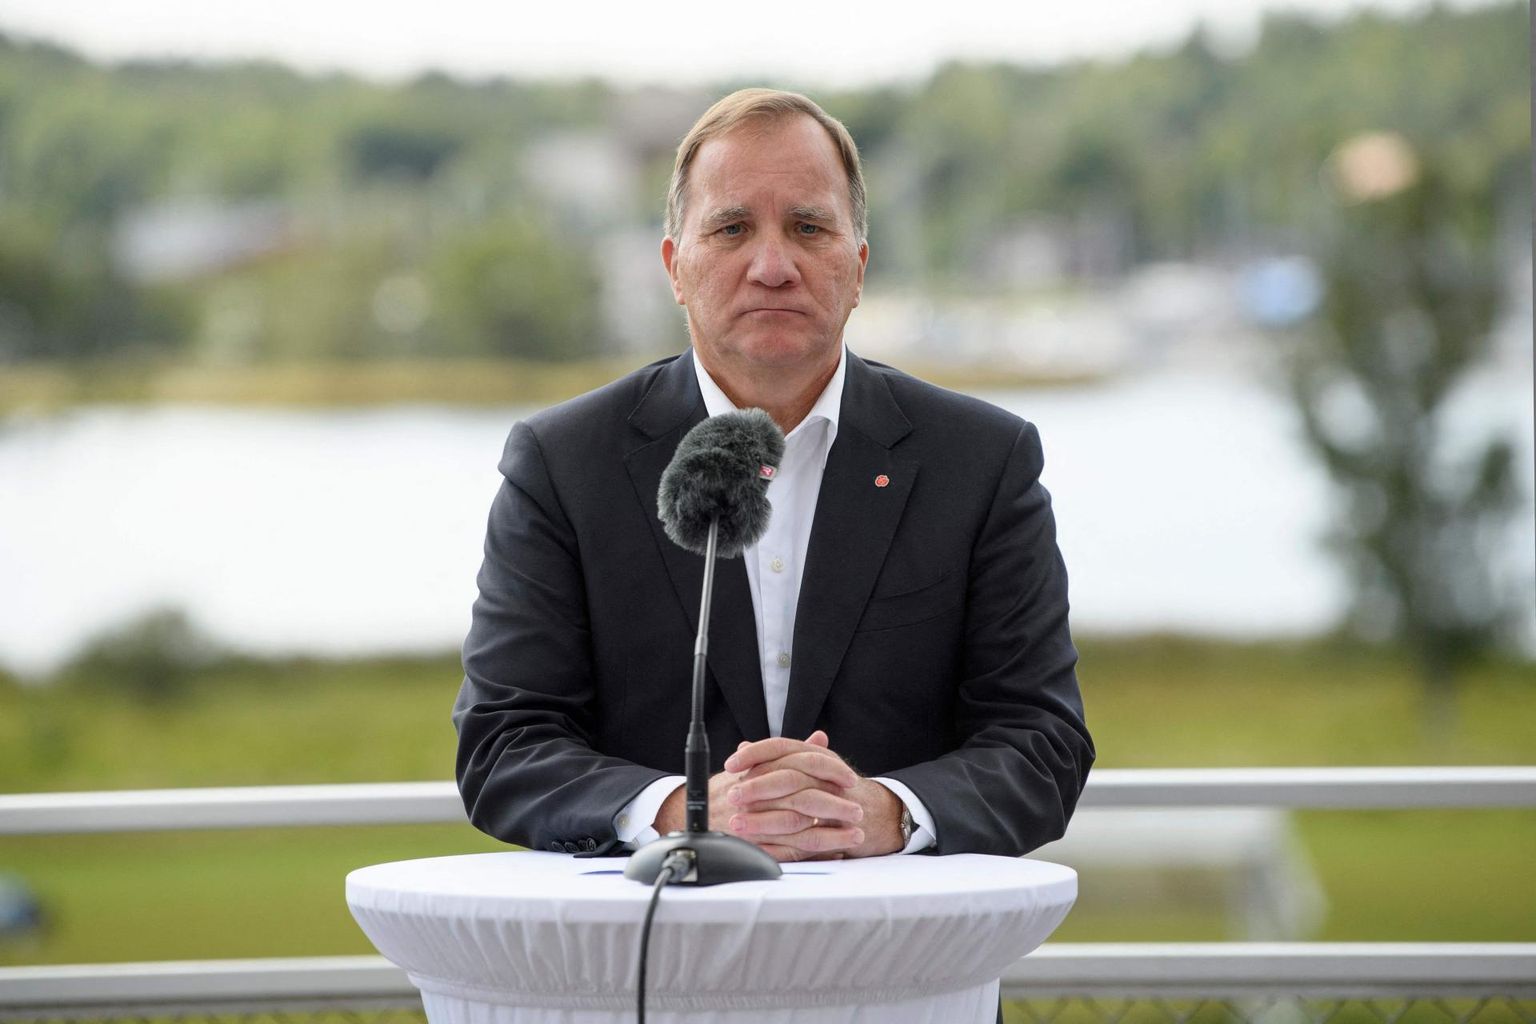 Pühapäeval Stockholmi lähistel Åkersbergas peetud suvekõne lõpetas peaminister Stefan Löfven ootamatu teatega, et paneb sügisel sotside esimehe ja valitsusjuhi ameti maha. 